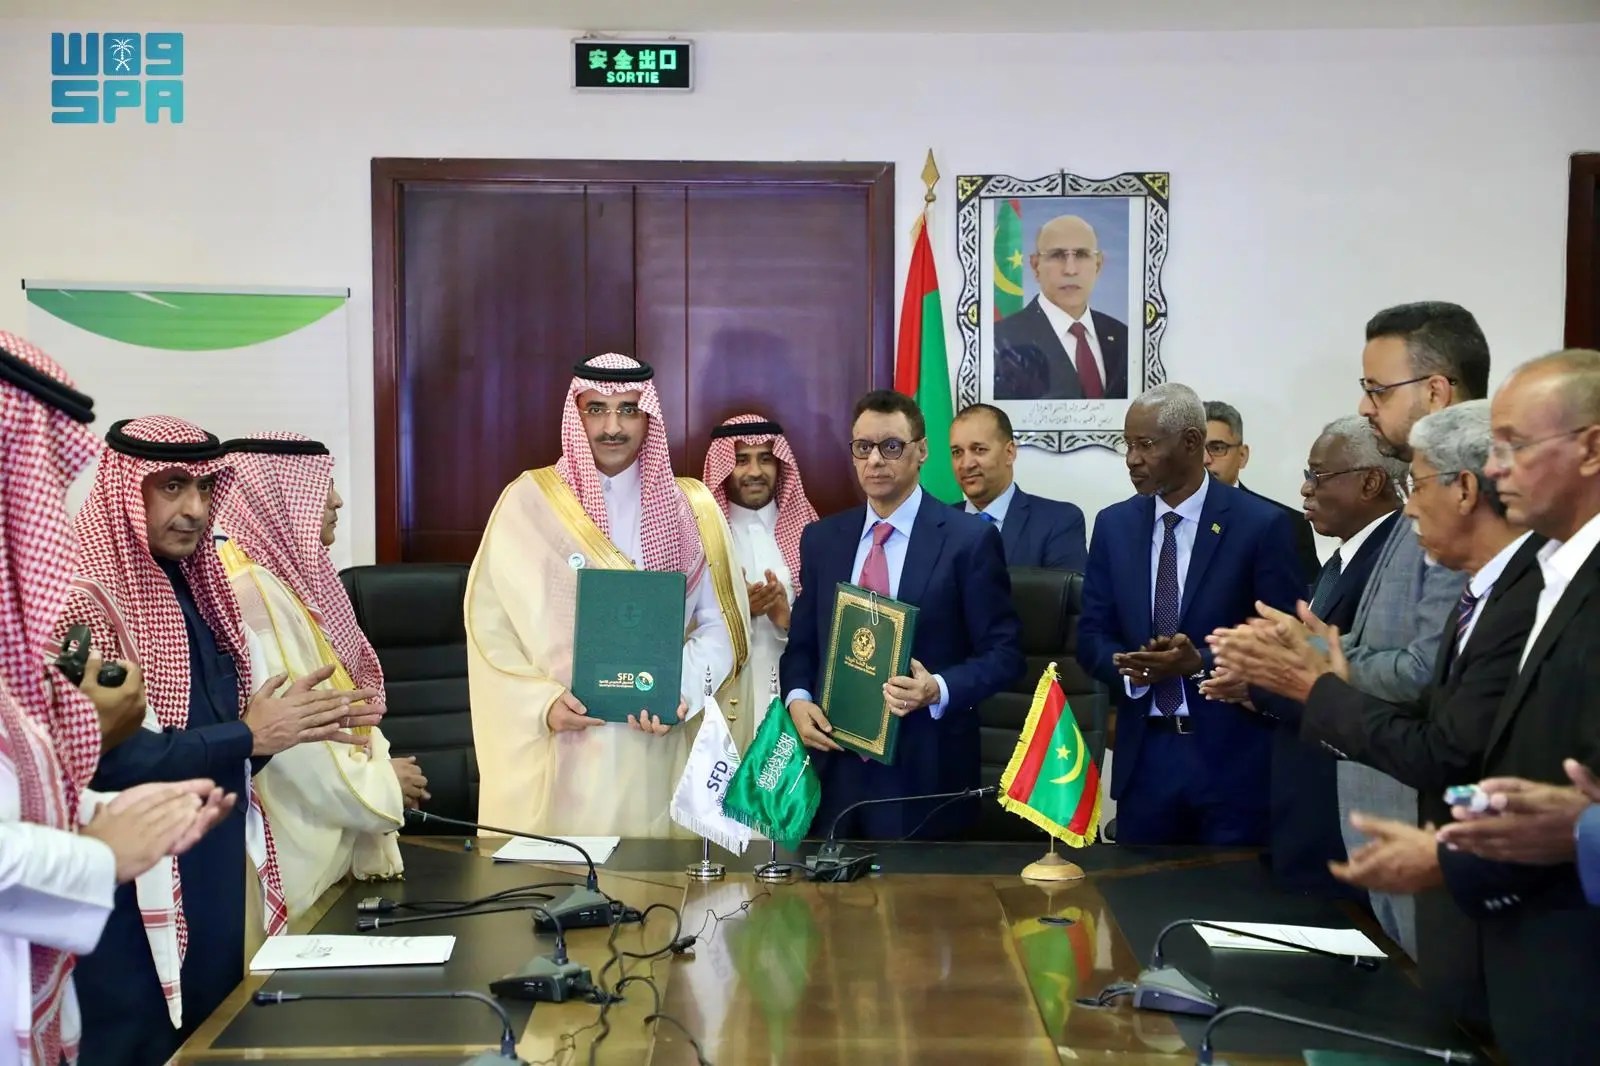 الصندوق السعودي للتنمية يشارك في افتتاح مستشفى ويموّل إنشاء معاهد تعليمية في موريتانيا